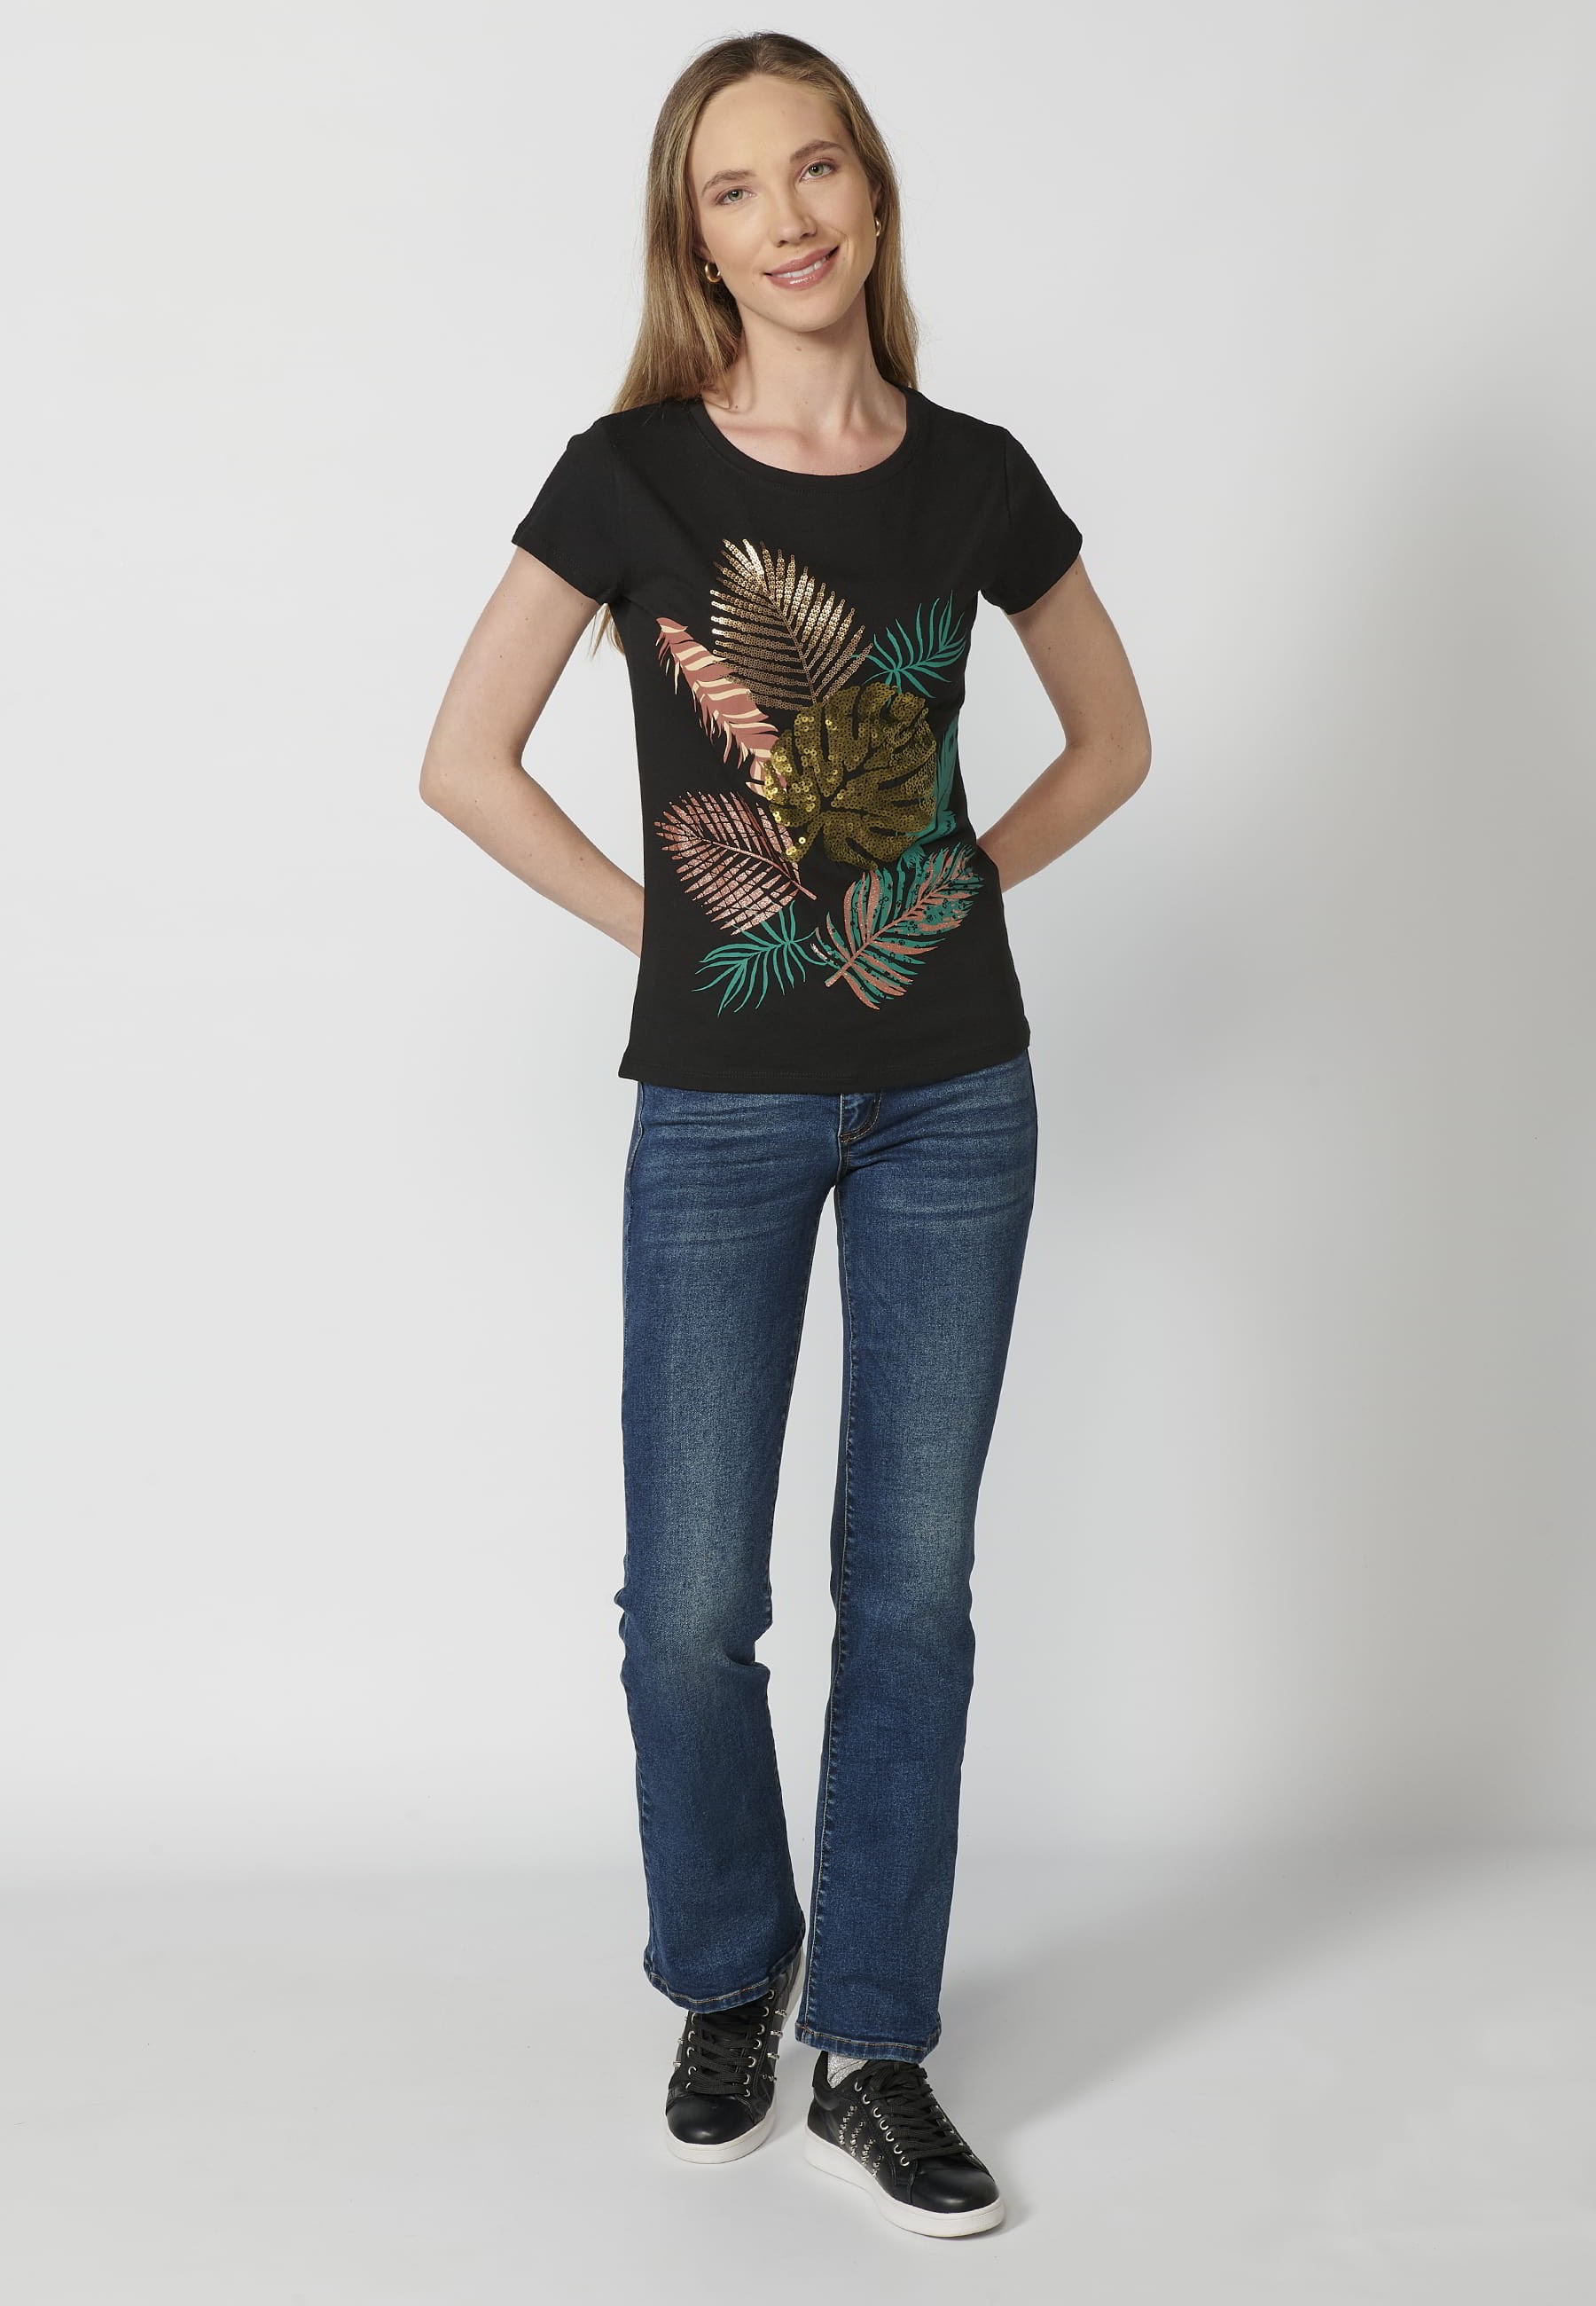 Camiseta de manga corta de algodón cuello redondo estampado frontal hojas color negro para mujer 3